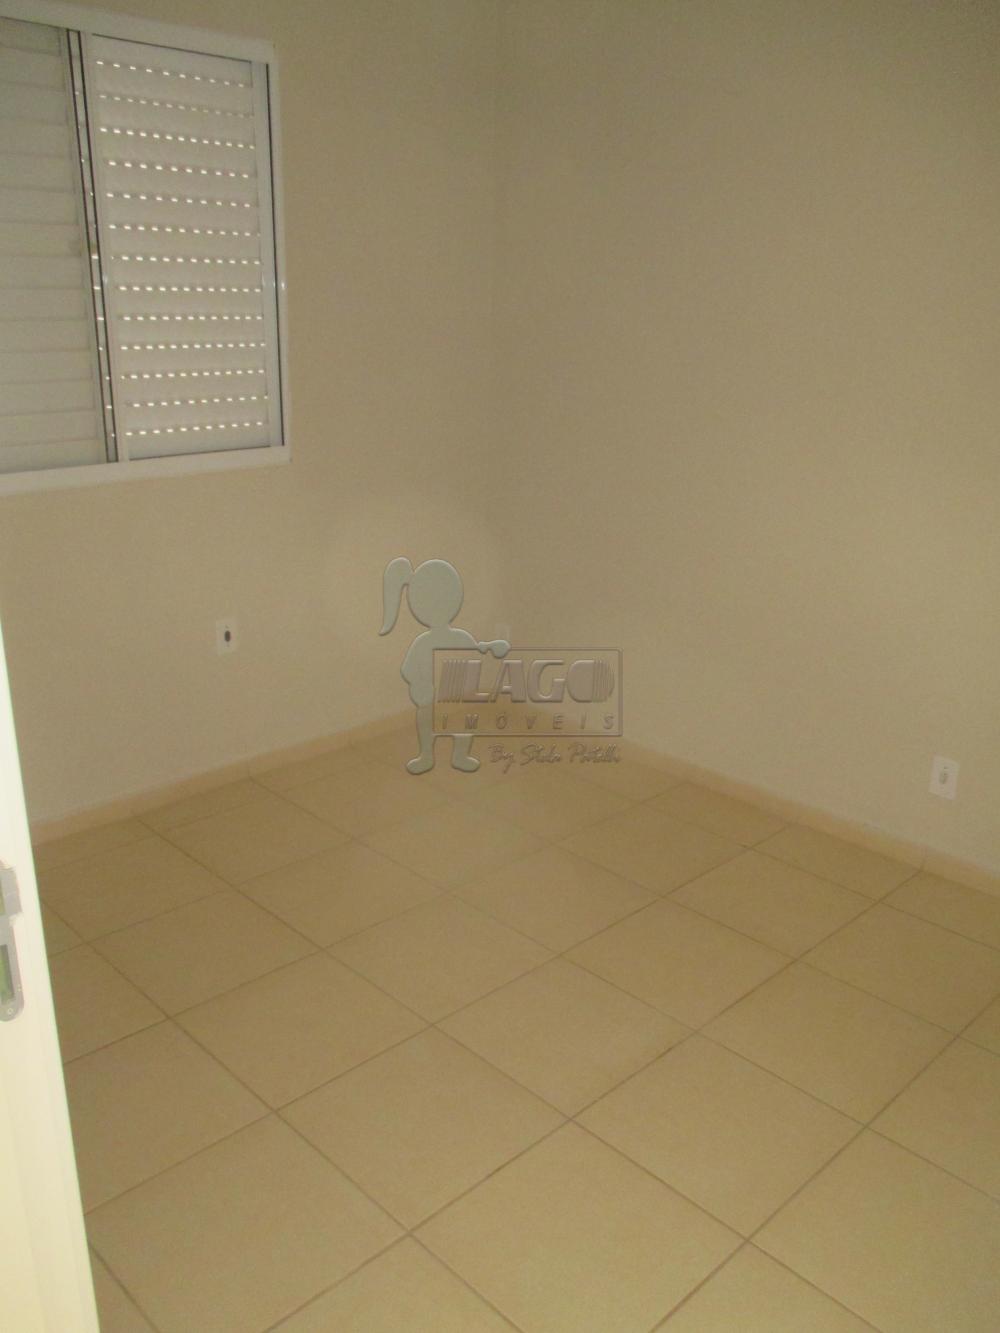 Alugar Apartamentos / Padrão em Ribeirão Preto R$ 800,00 - Foto 4